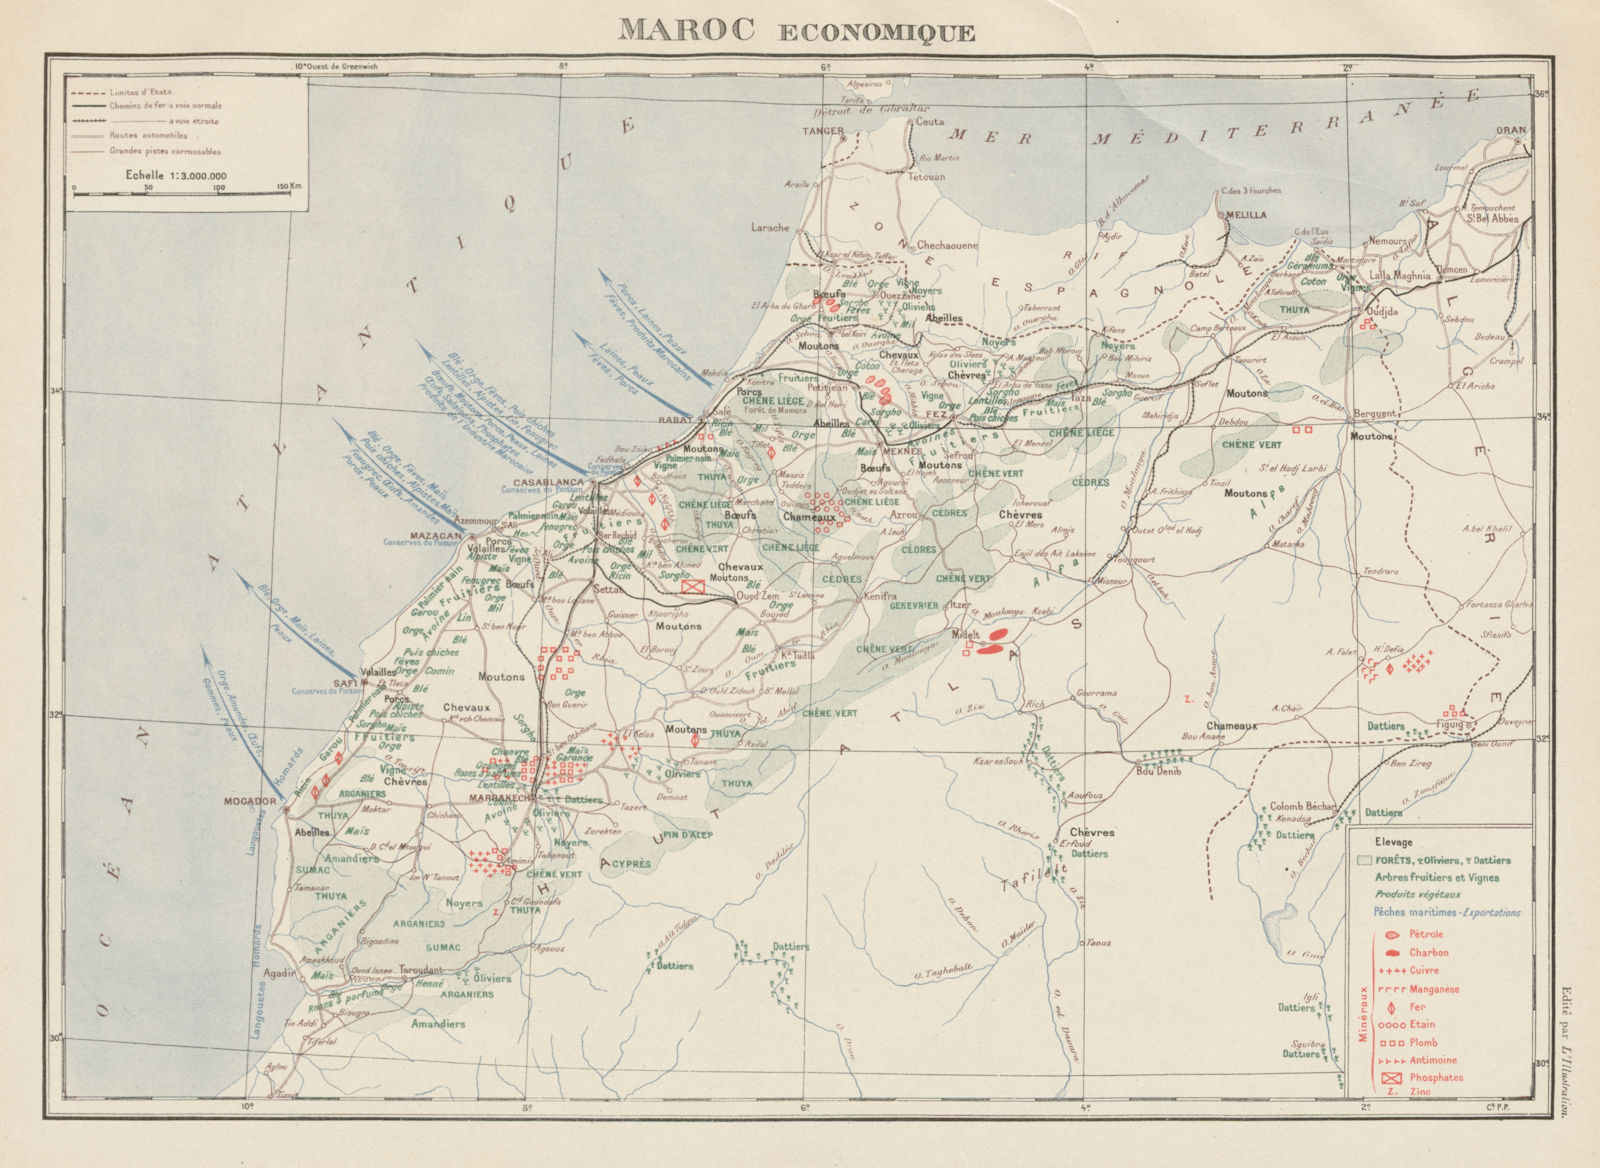 FRENCH MOROCCO ECONOMIC/RESOURCES Maroc Protectorat français economique 1929 map